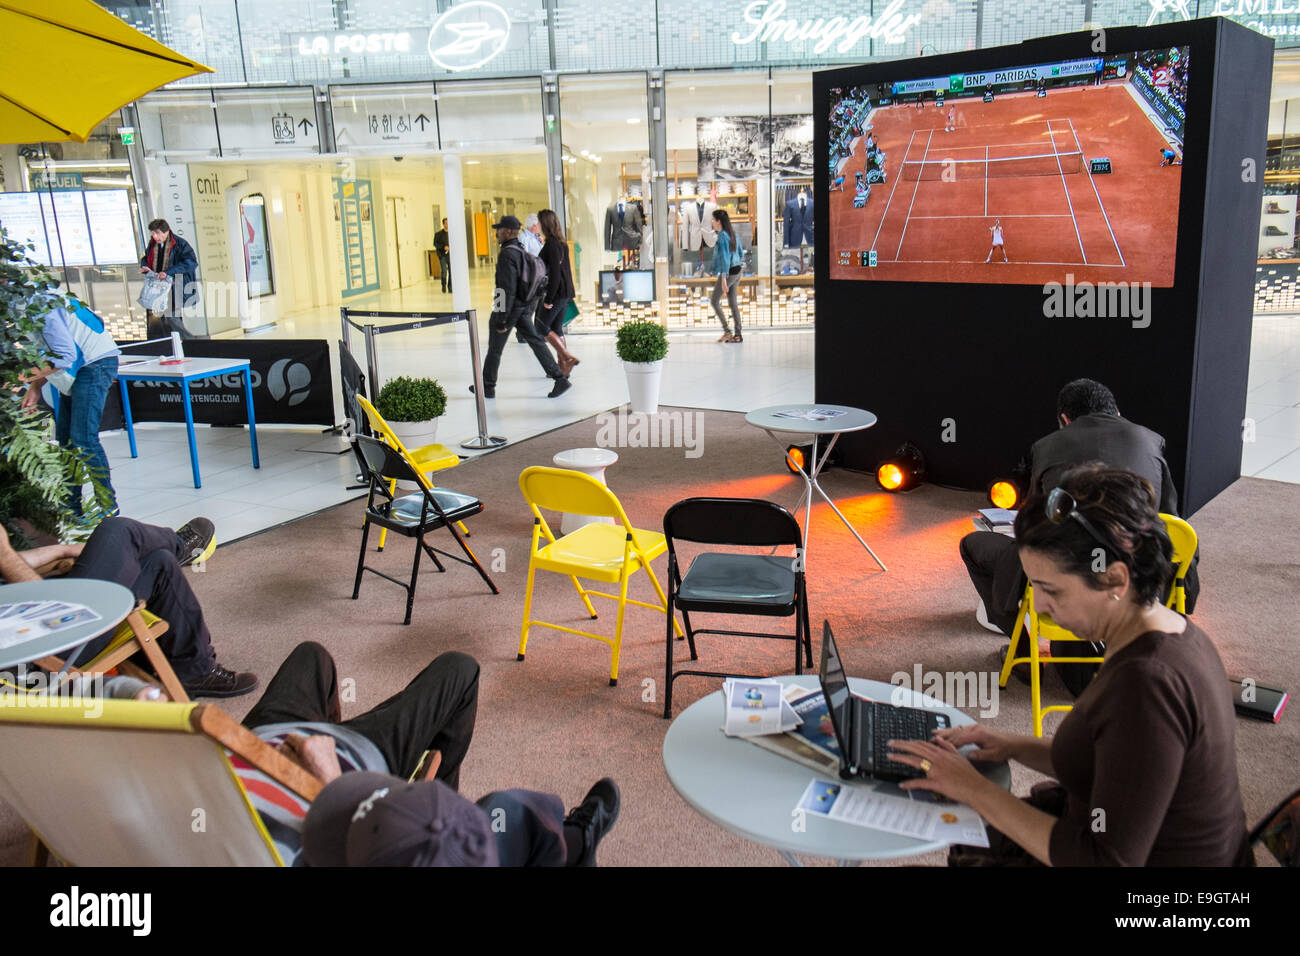 Des tables de ping-pong et un service de massages pour une utilisation gratuite pendant que Roland Garros,French Open Tennis Tournament est encouragée. Banque D'Images